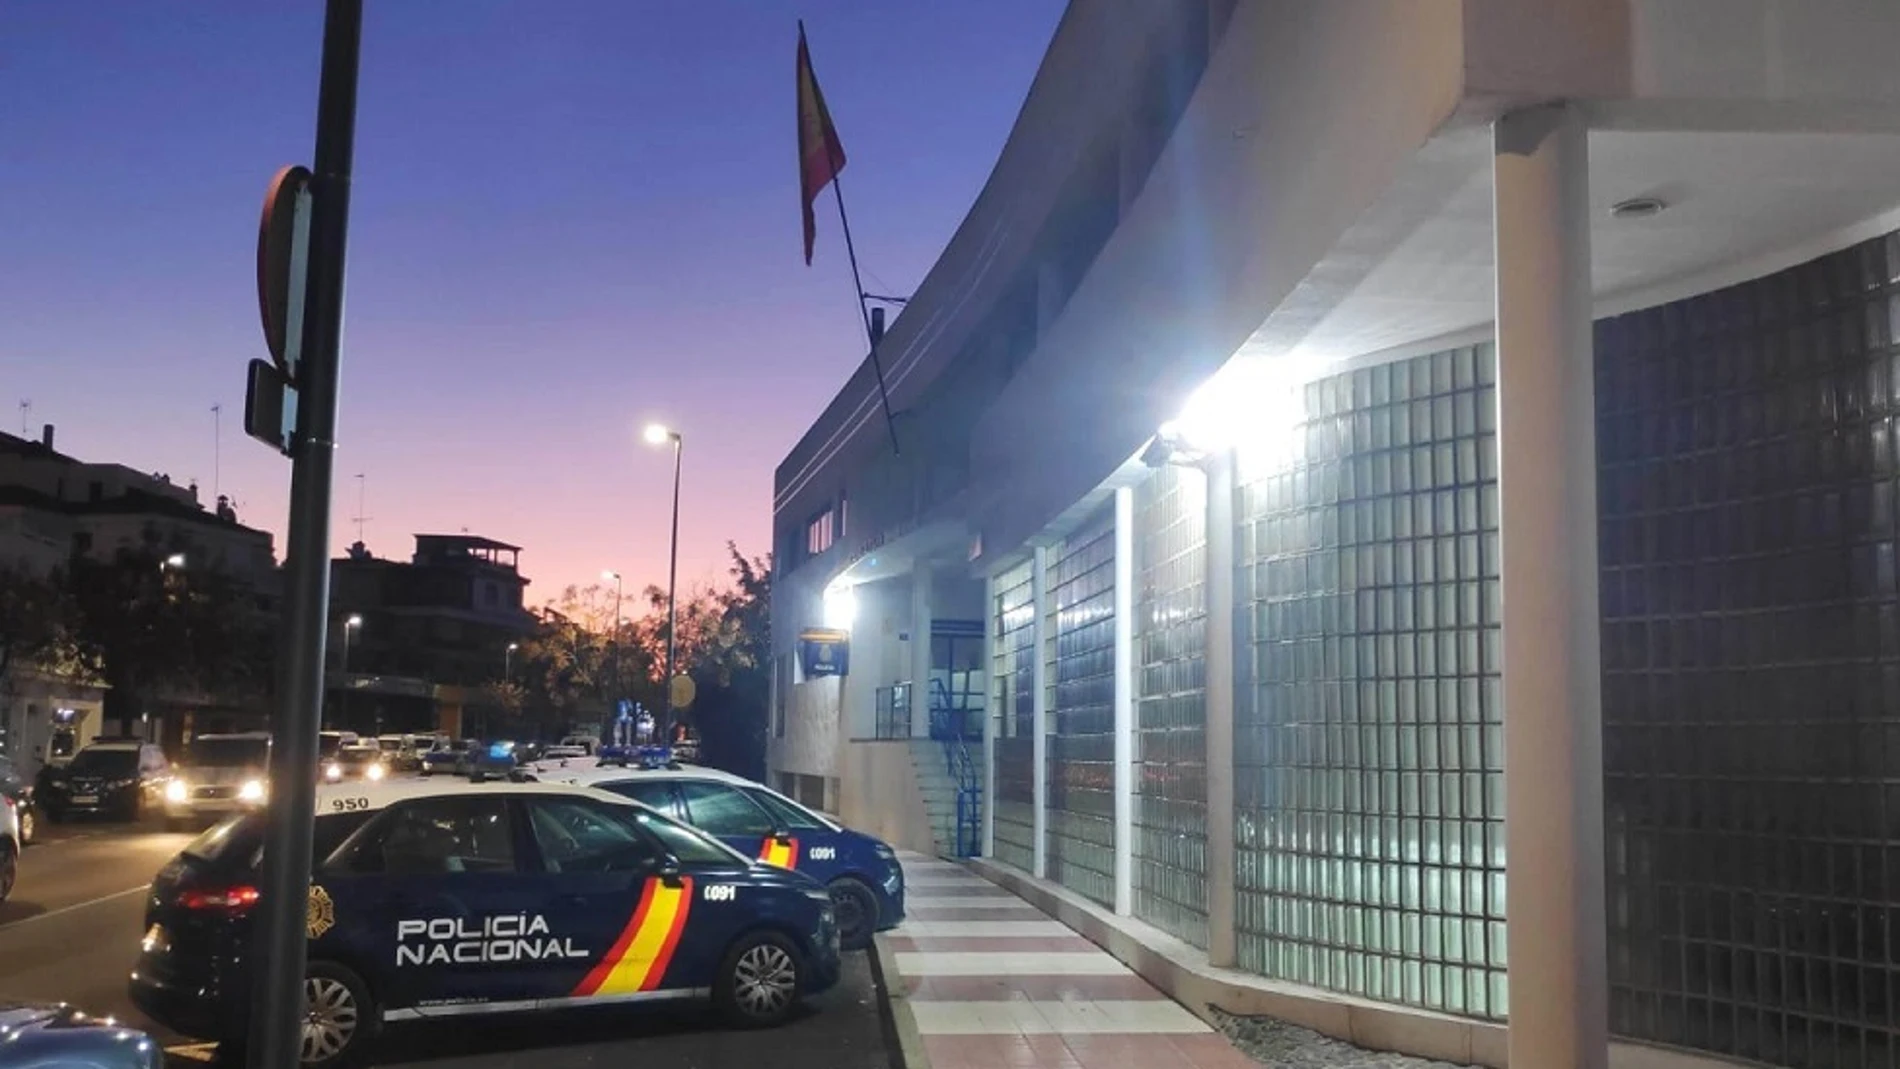 Comisaría de la Policía Nacional de Marbella (Málaga). POLICÍA NACIONAL